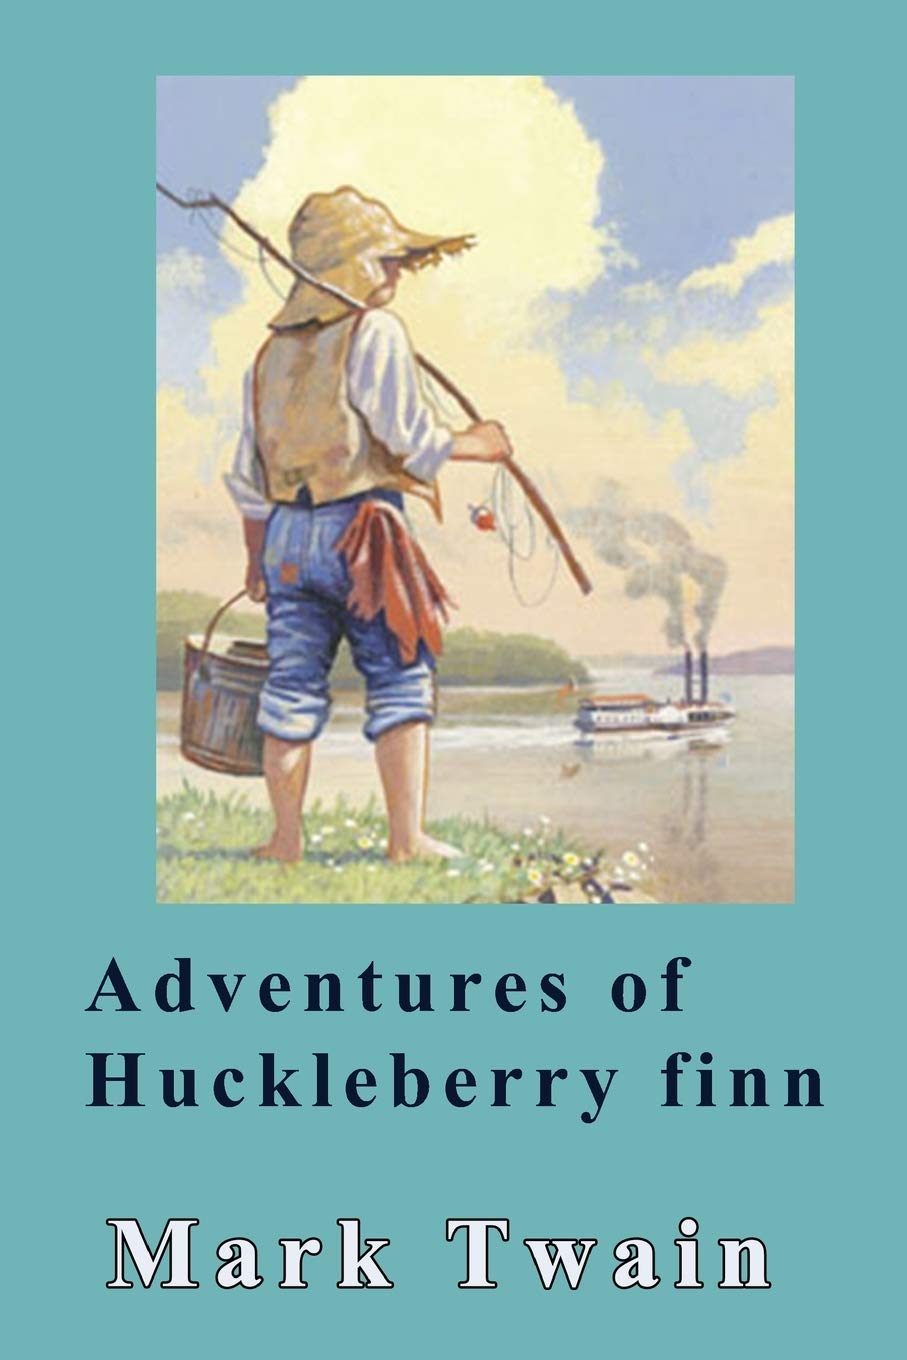 "The Adventures of Huckleberry Finn" by Mark Twain